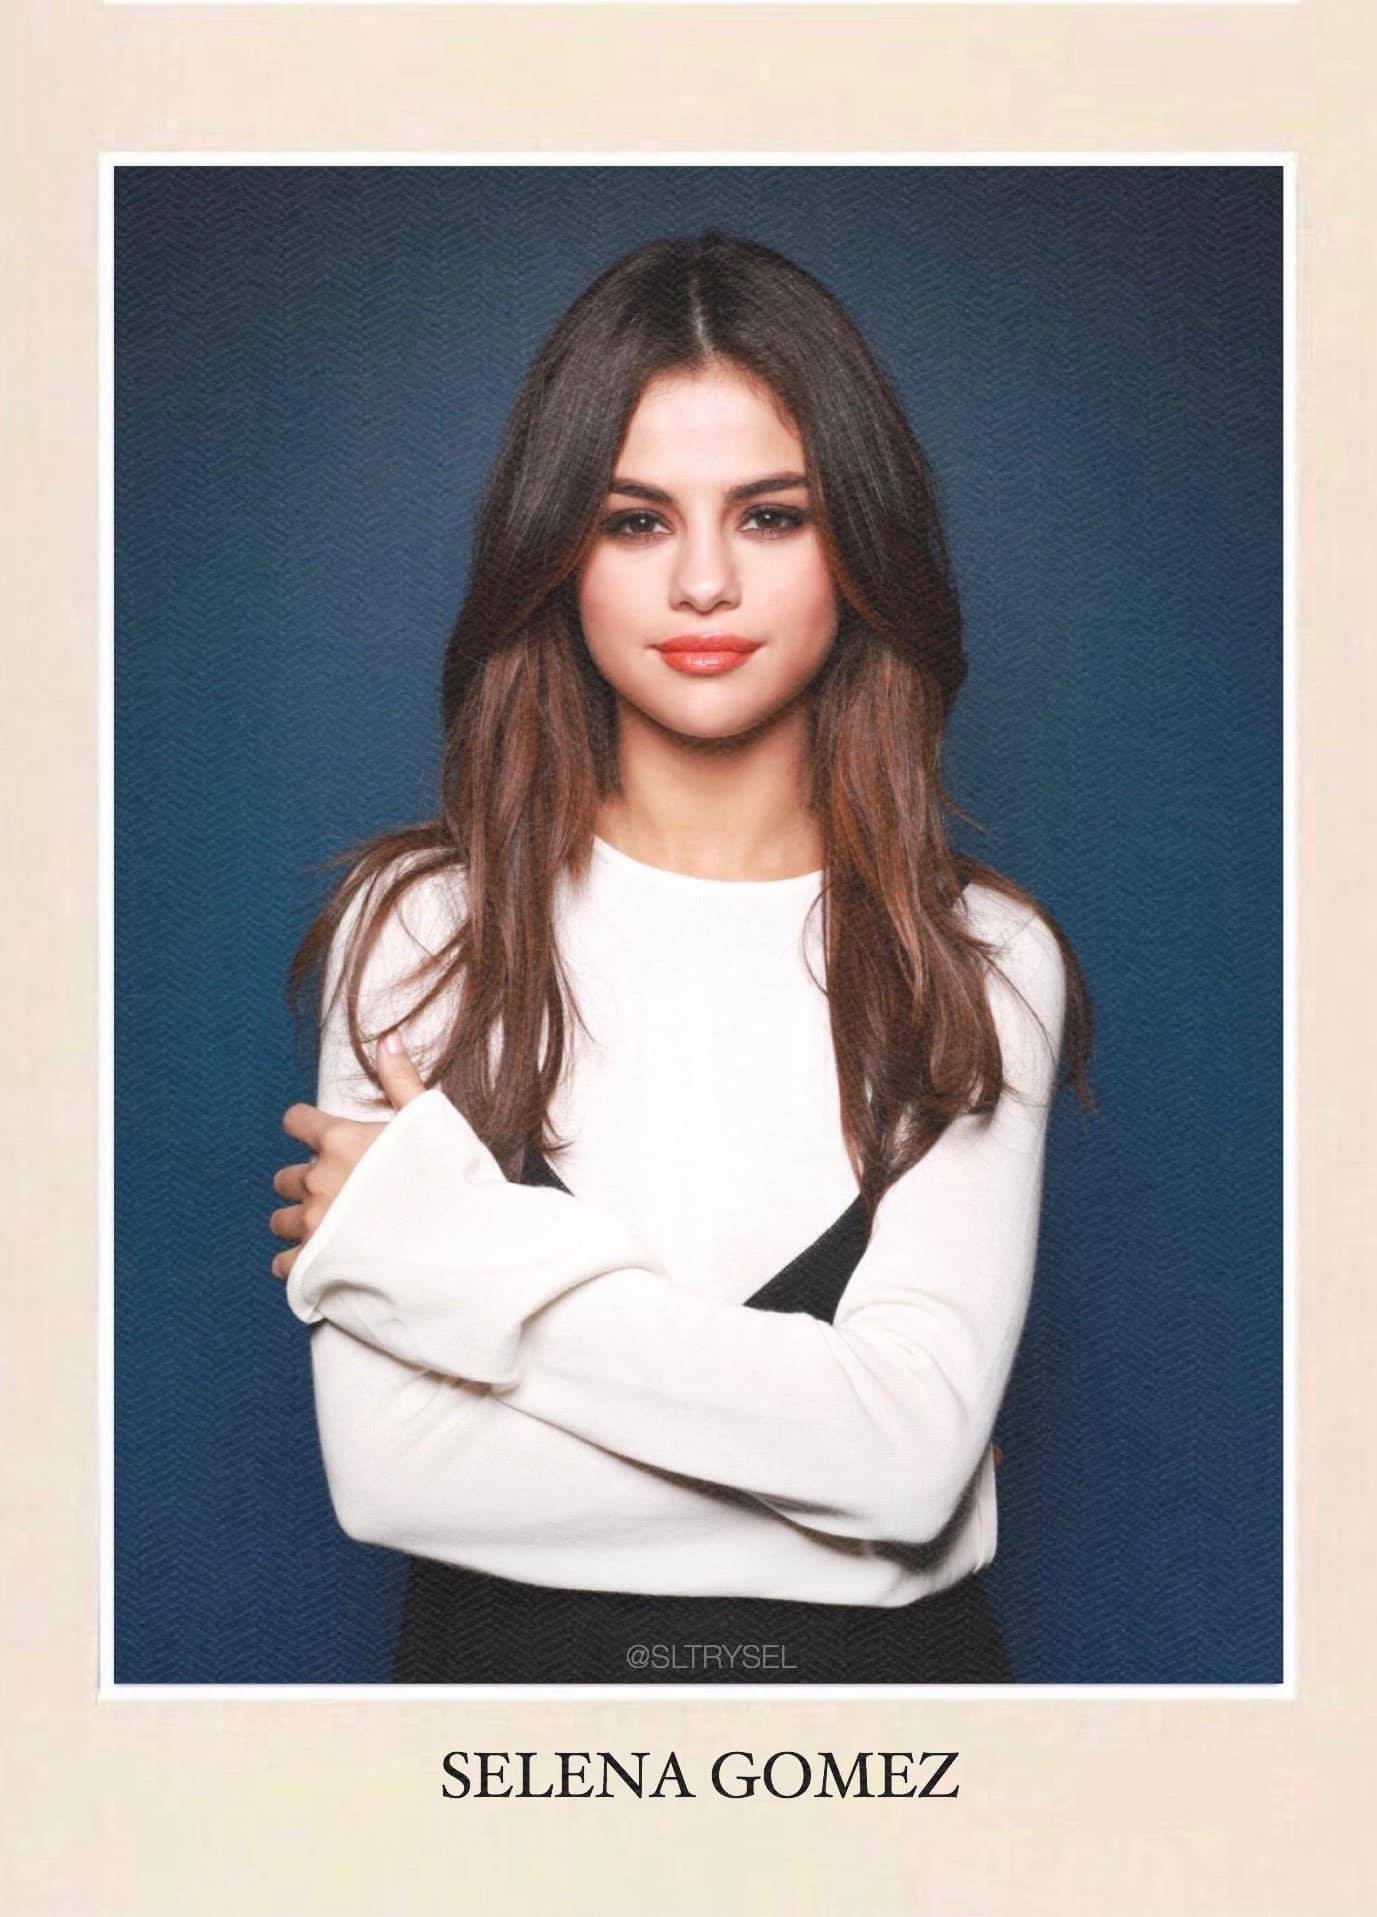 Rần rần ảnh thẻ huyền thoại của Selena Gomez, fan truy tìm nguồn gốc bức hình và cái kết ngã ngửa - Ảnh 2.